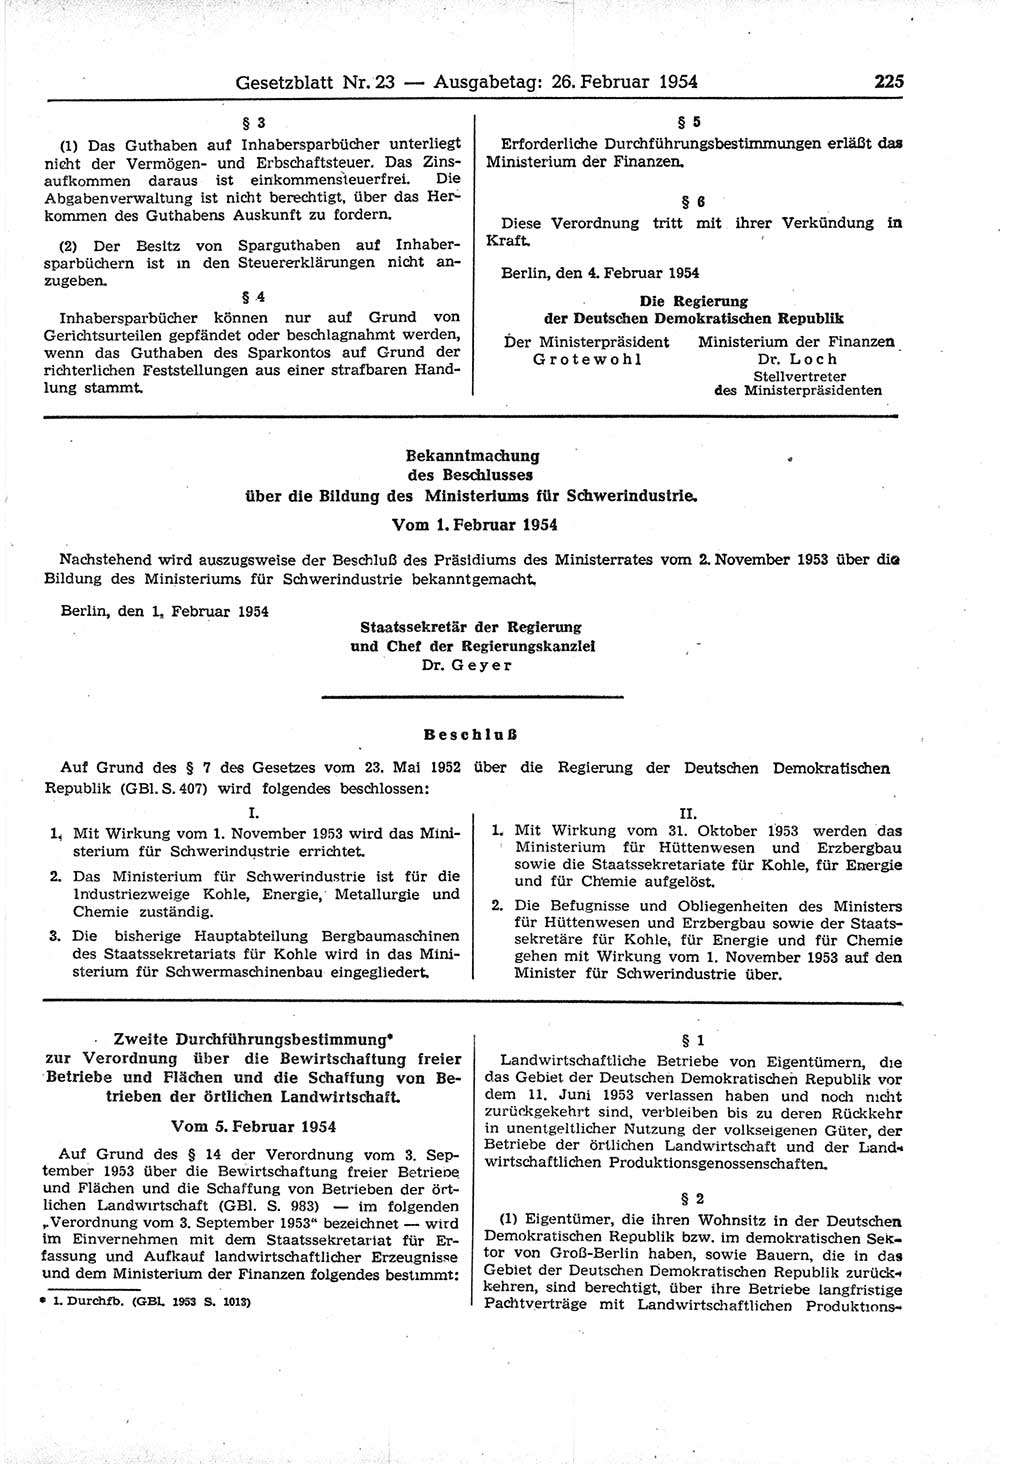 Gesetzblatt (GBl.) der Deutschen Demokratischen Republik (DDR) 1954, Seite 225 (GBl. DDR 1954, S. 225)